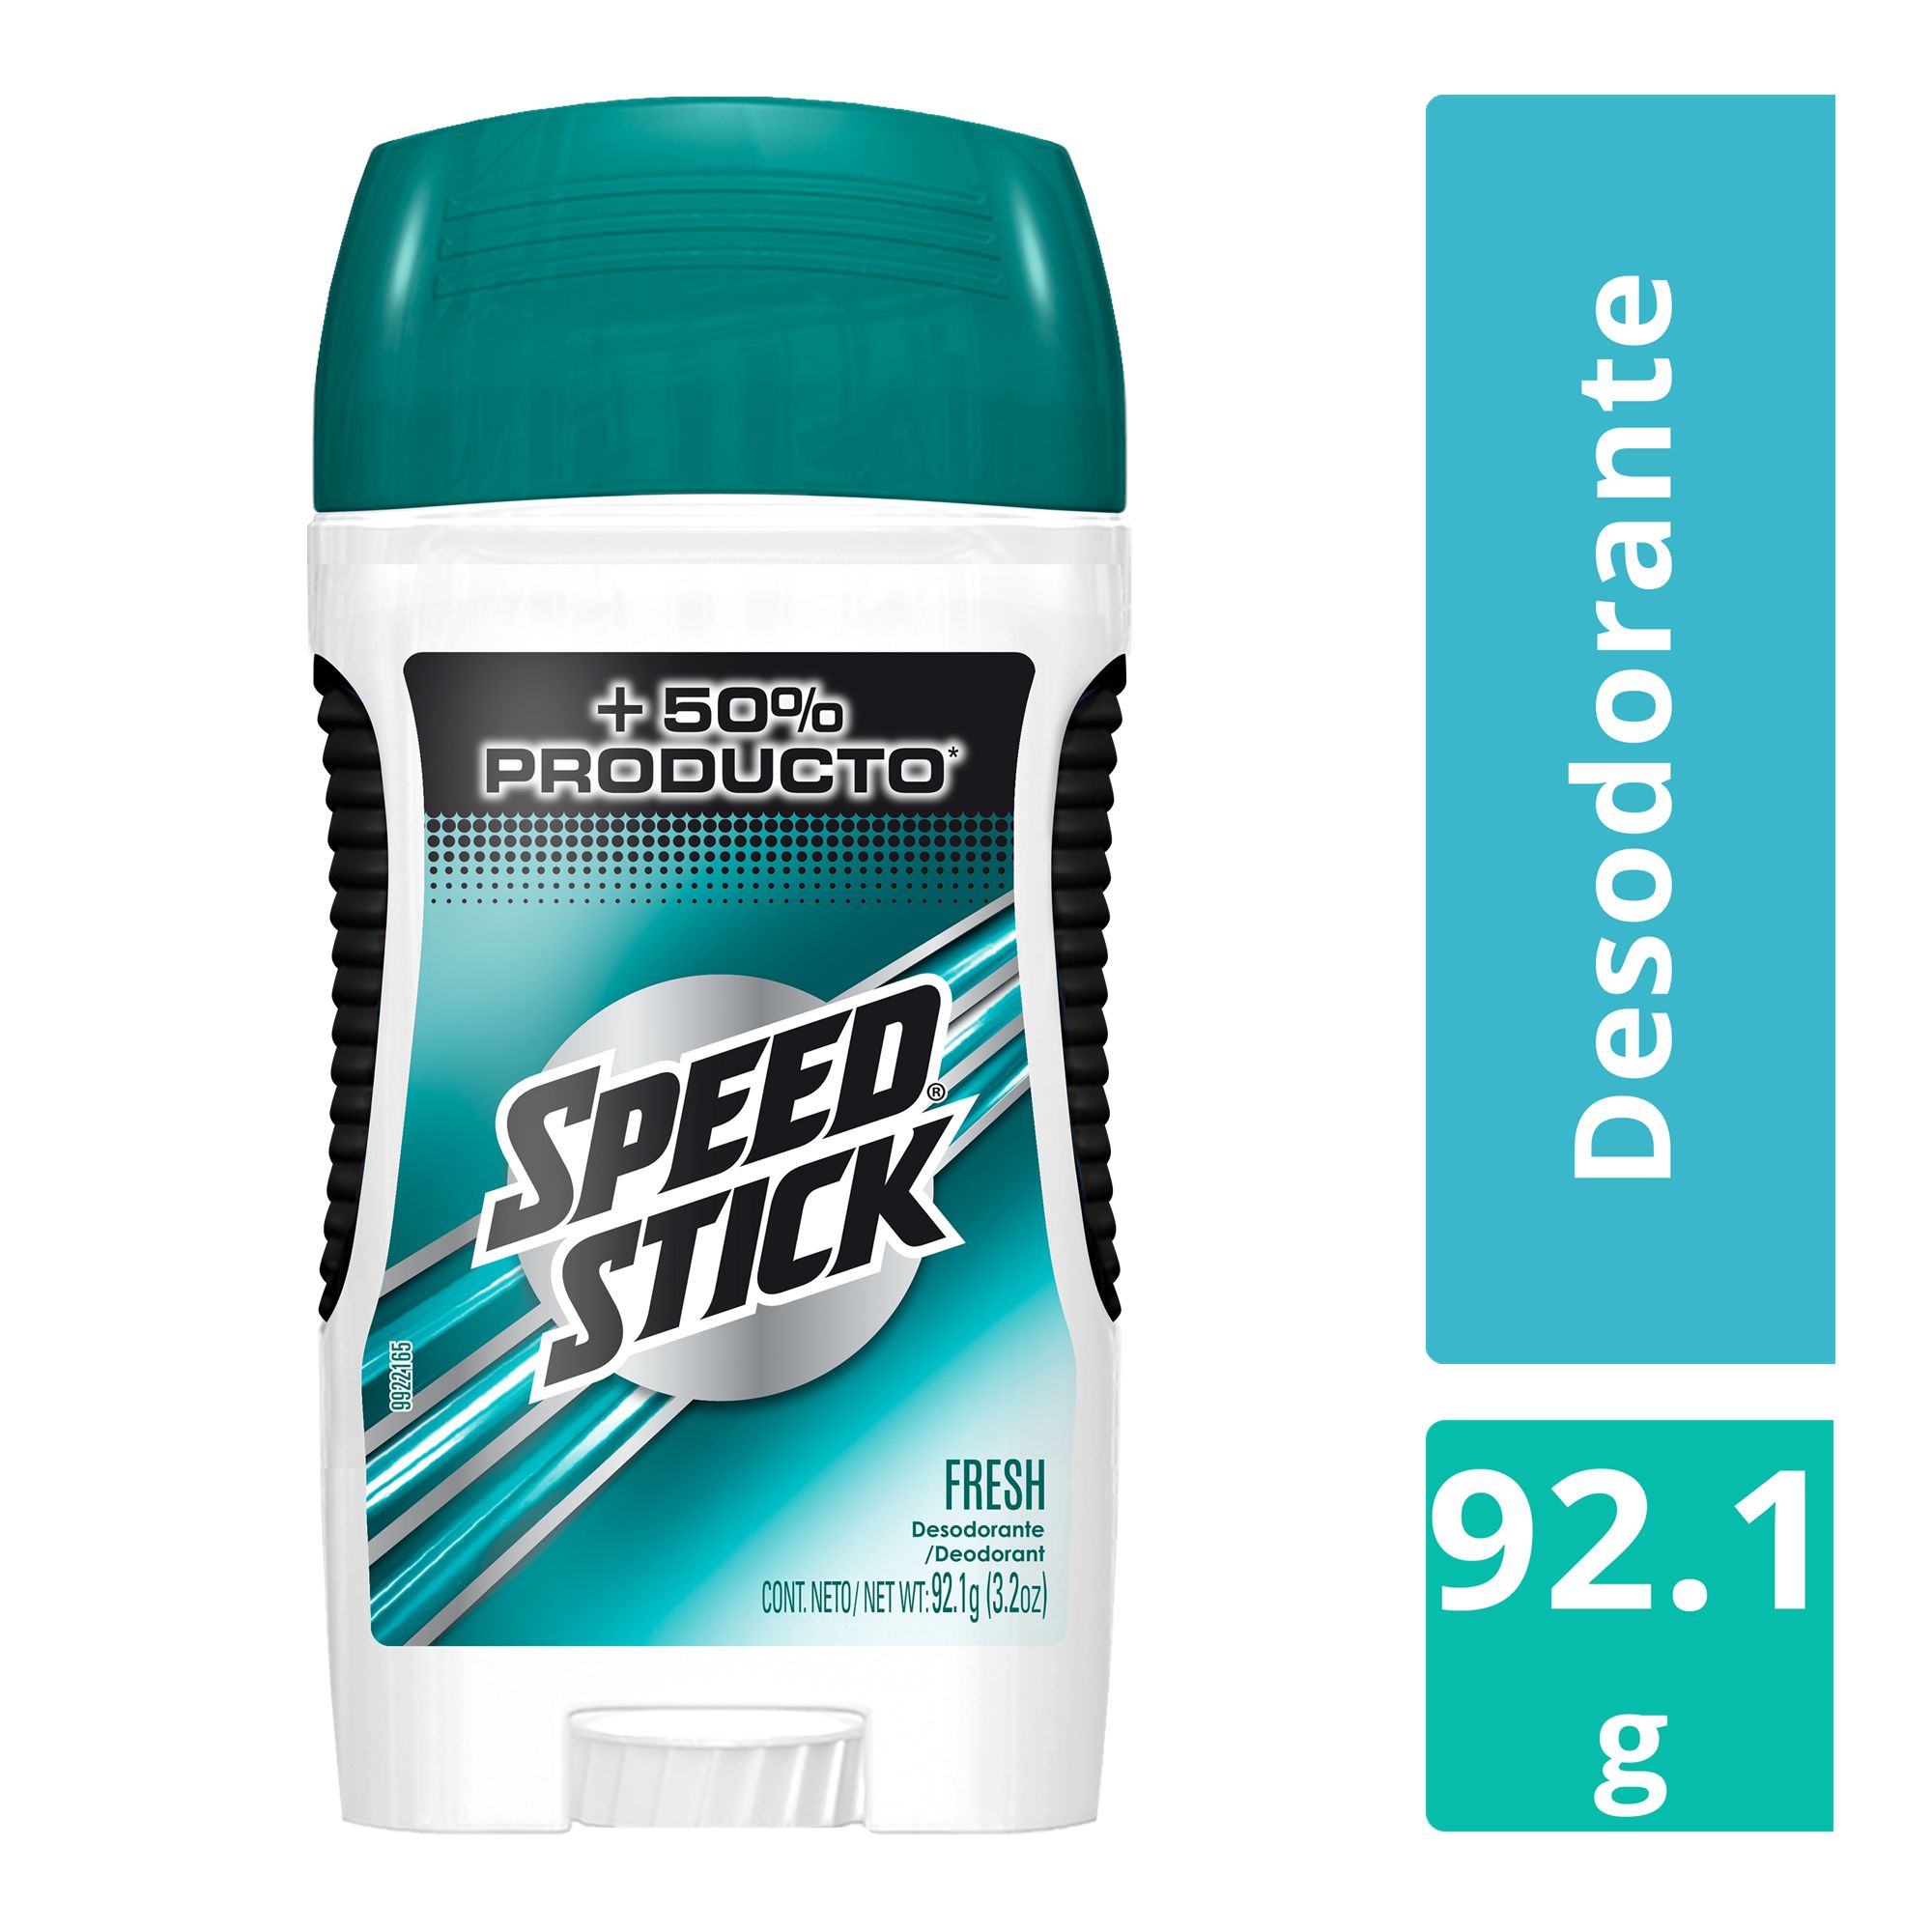 Desodorante-Speed-Stick-Fresh-Barra-de-92-1-g-1-24688